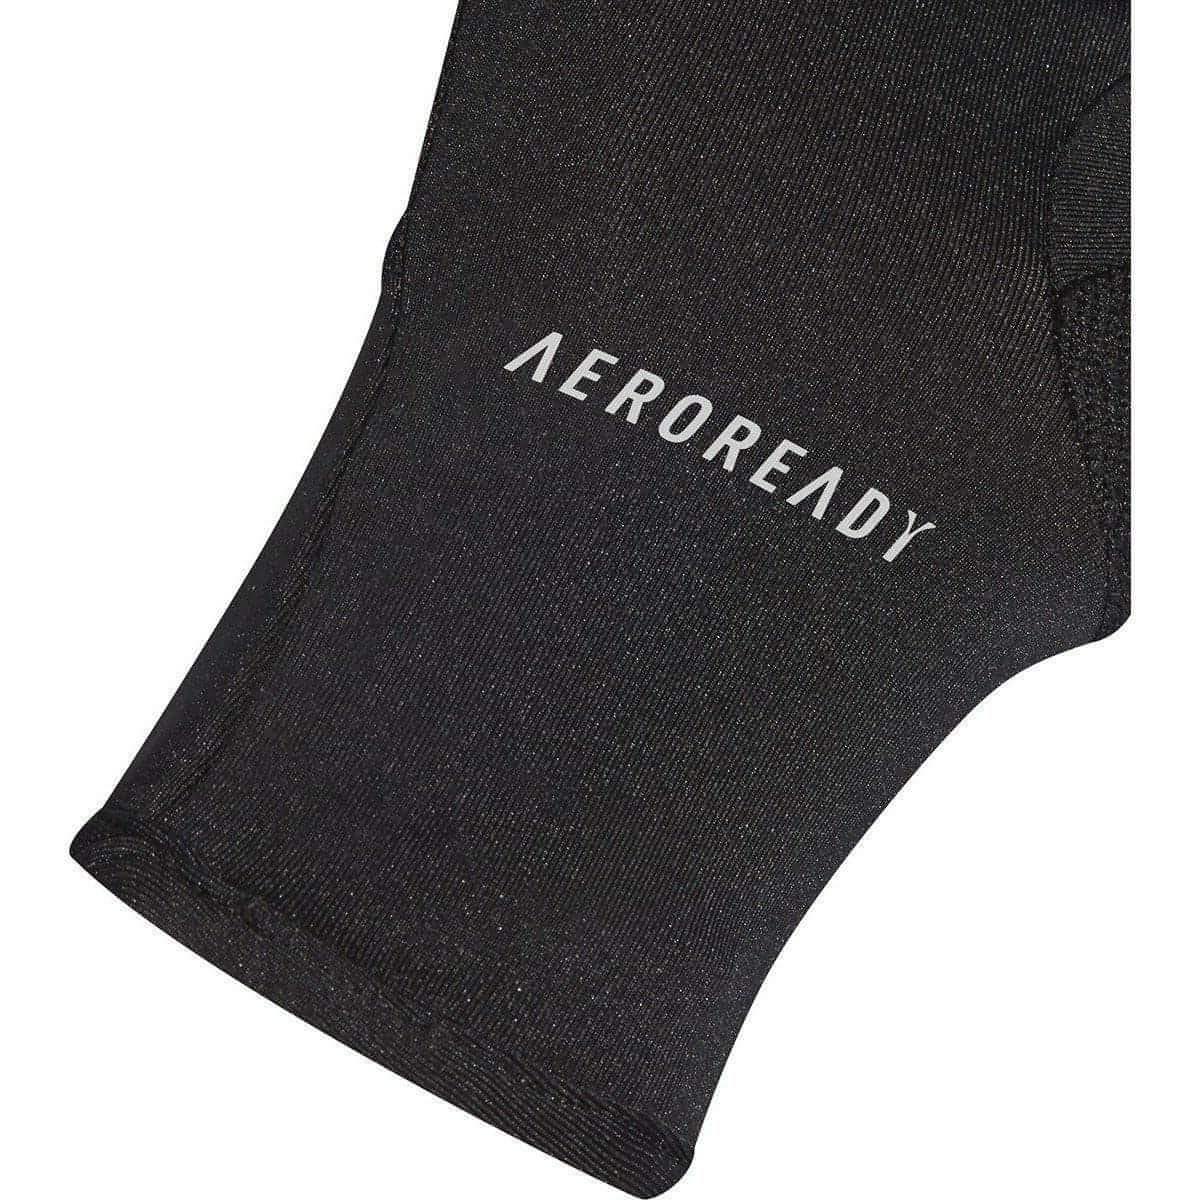 adidas AeroReady Warm Running Gloves - Black - Start Fitness